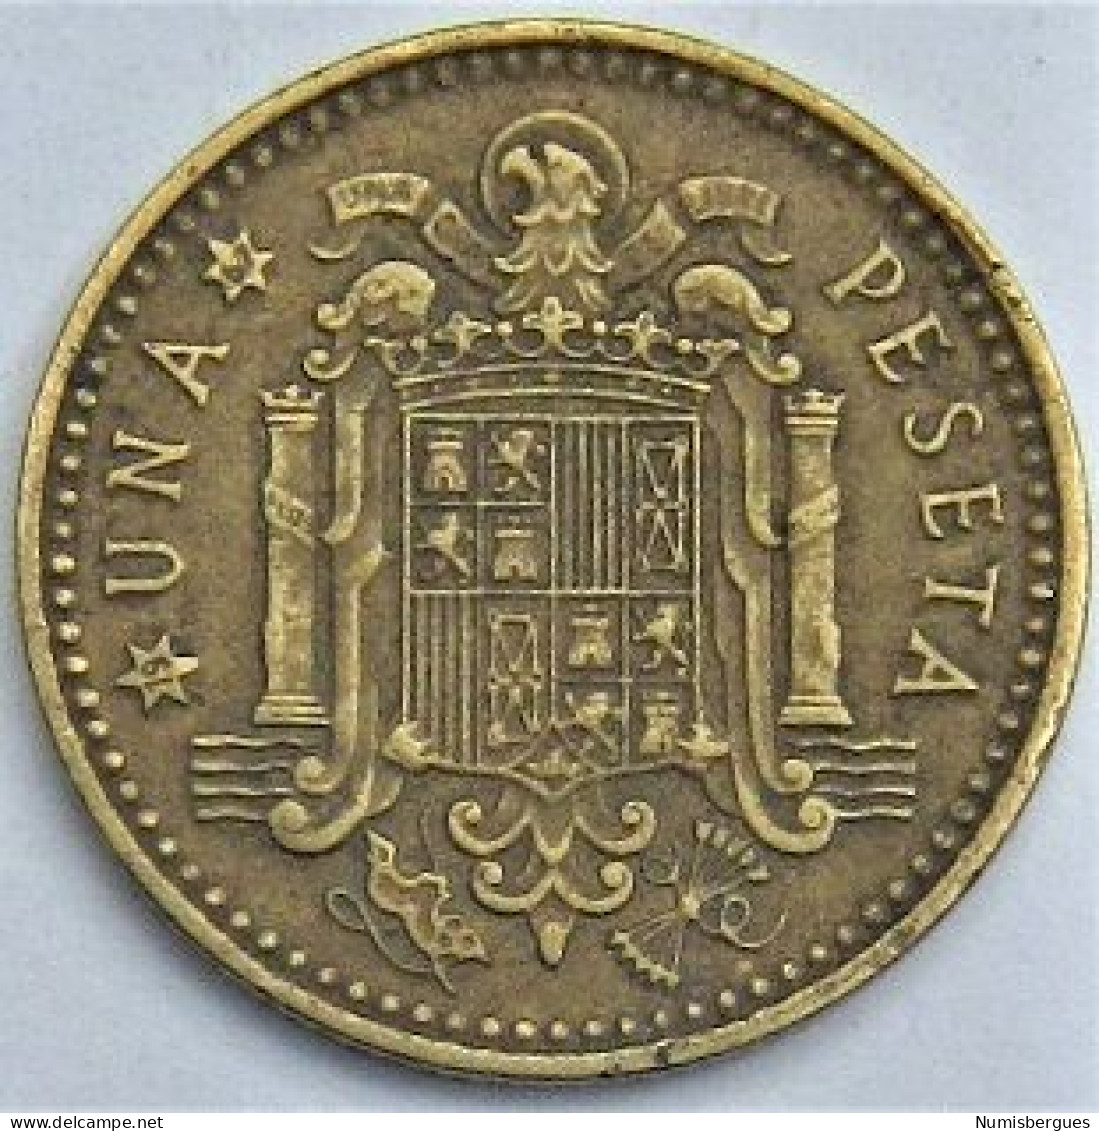 Pièce De Monnaie 1 Peseta 1967 - 1 Peseta